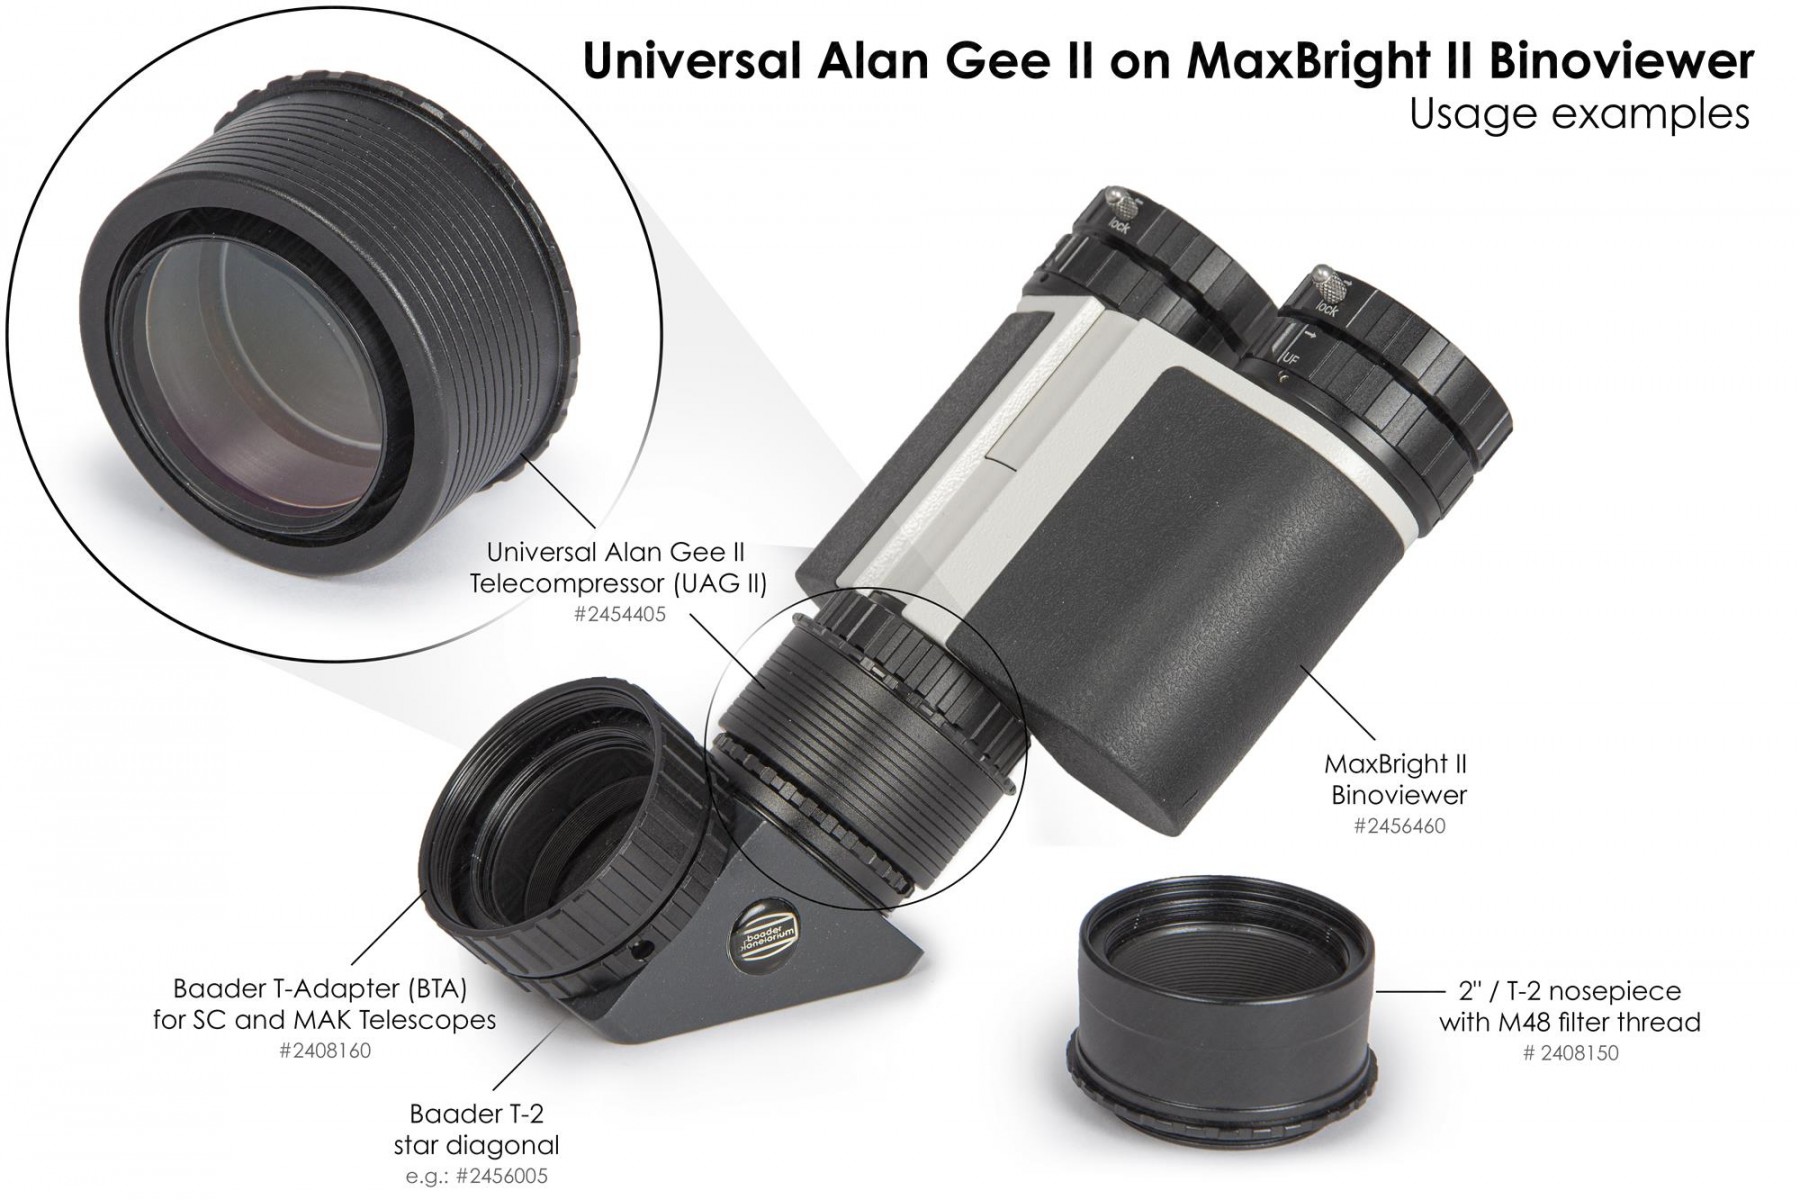 Anwendungsbild: Universal Alan Gee II #2454405 - Maxbright #2456460 SetUp 8 mit 2"/T-2 Steckanschluss mit M48 Filtergewinde #2408150, T-2 Zenitspiegel #2456005 und BTA für SC und MAK Teleskope #2408160